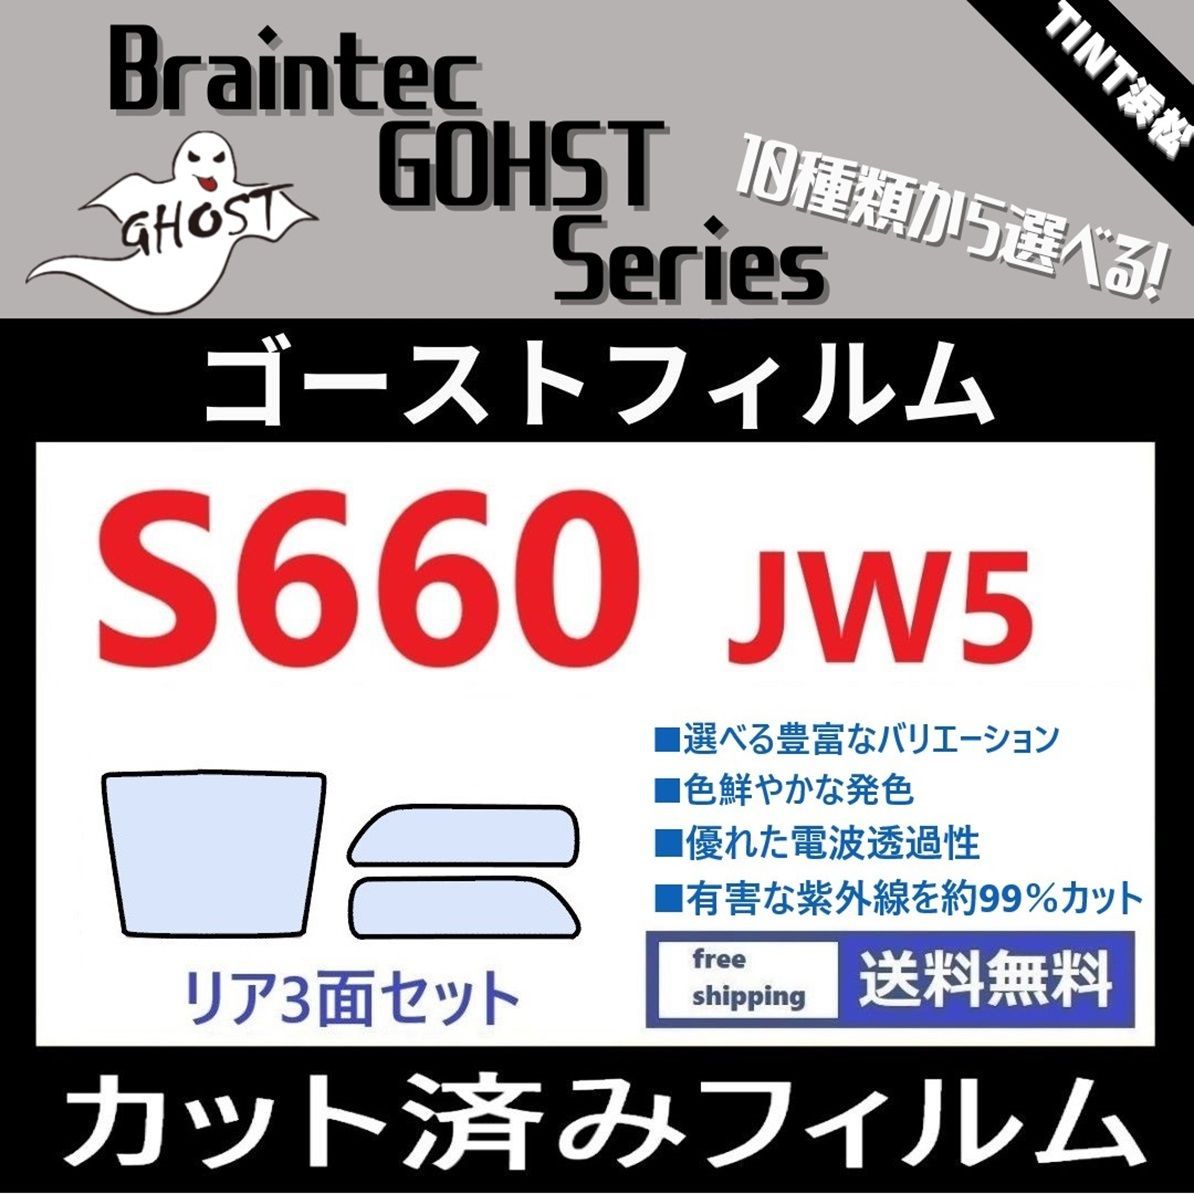 カーフィルム カット済み リアセット S660 JW5 ブレインテック ゴーストフィルム - メルカリ